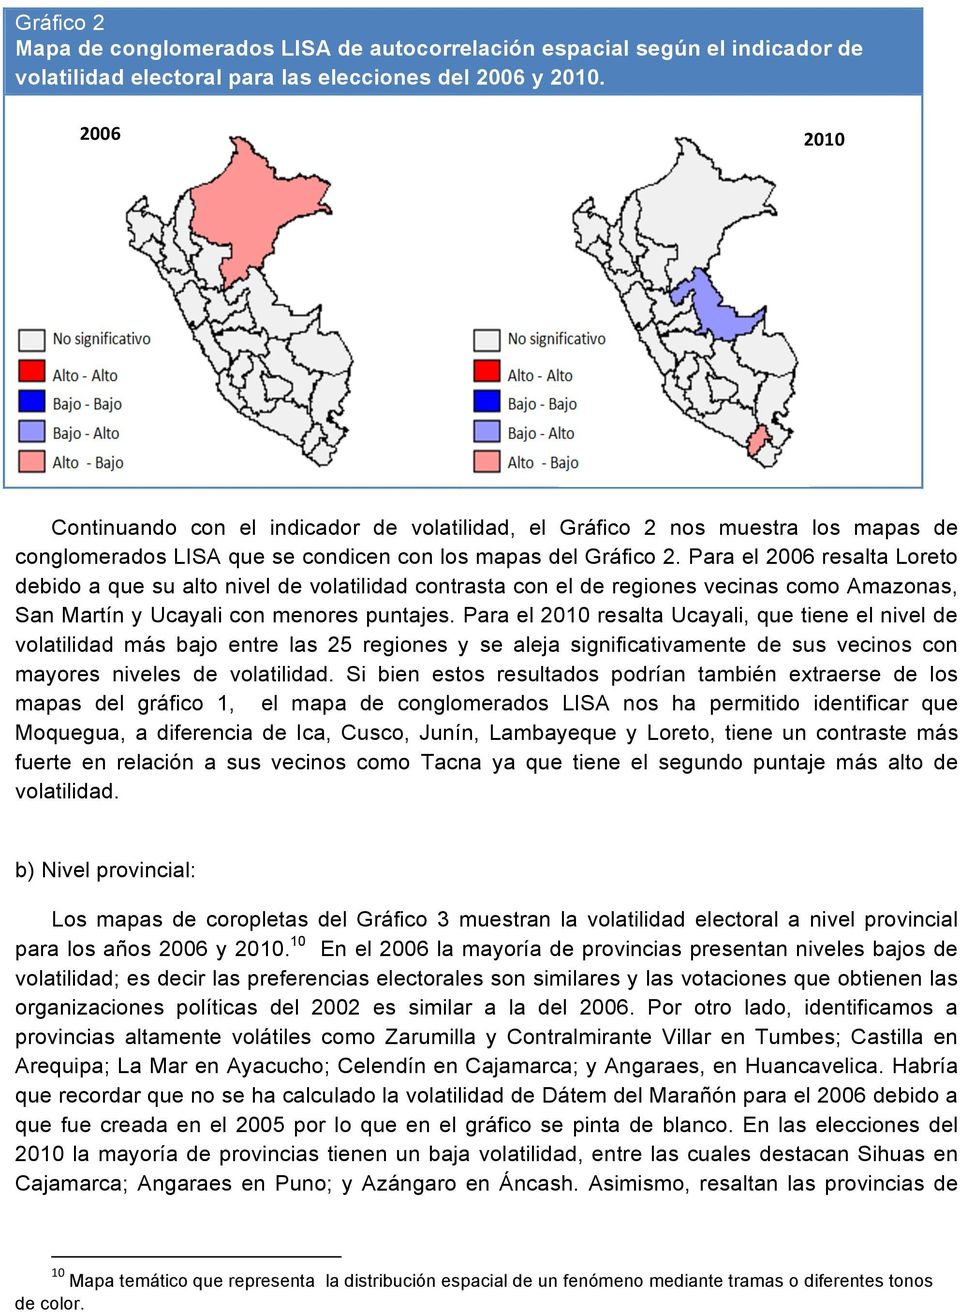 Para el 2006 resalta Loreto debido a que su alto nivel de volatilidad contrasta con el de regiones vecinas como Amazonas, San Martín y Ucayali con menores puntajes.